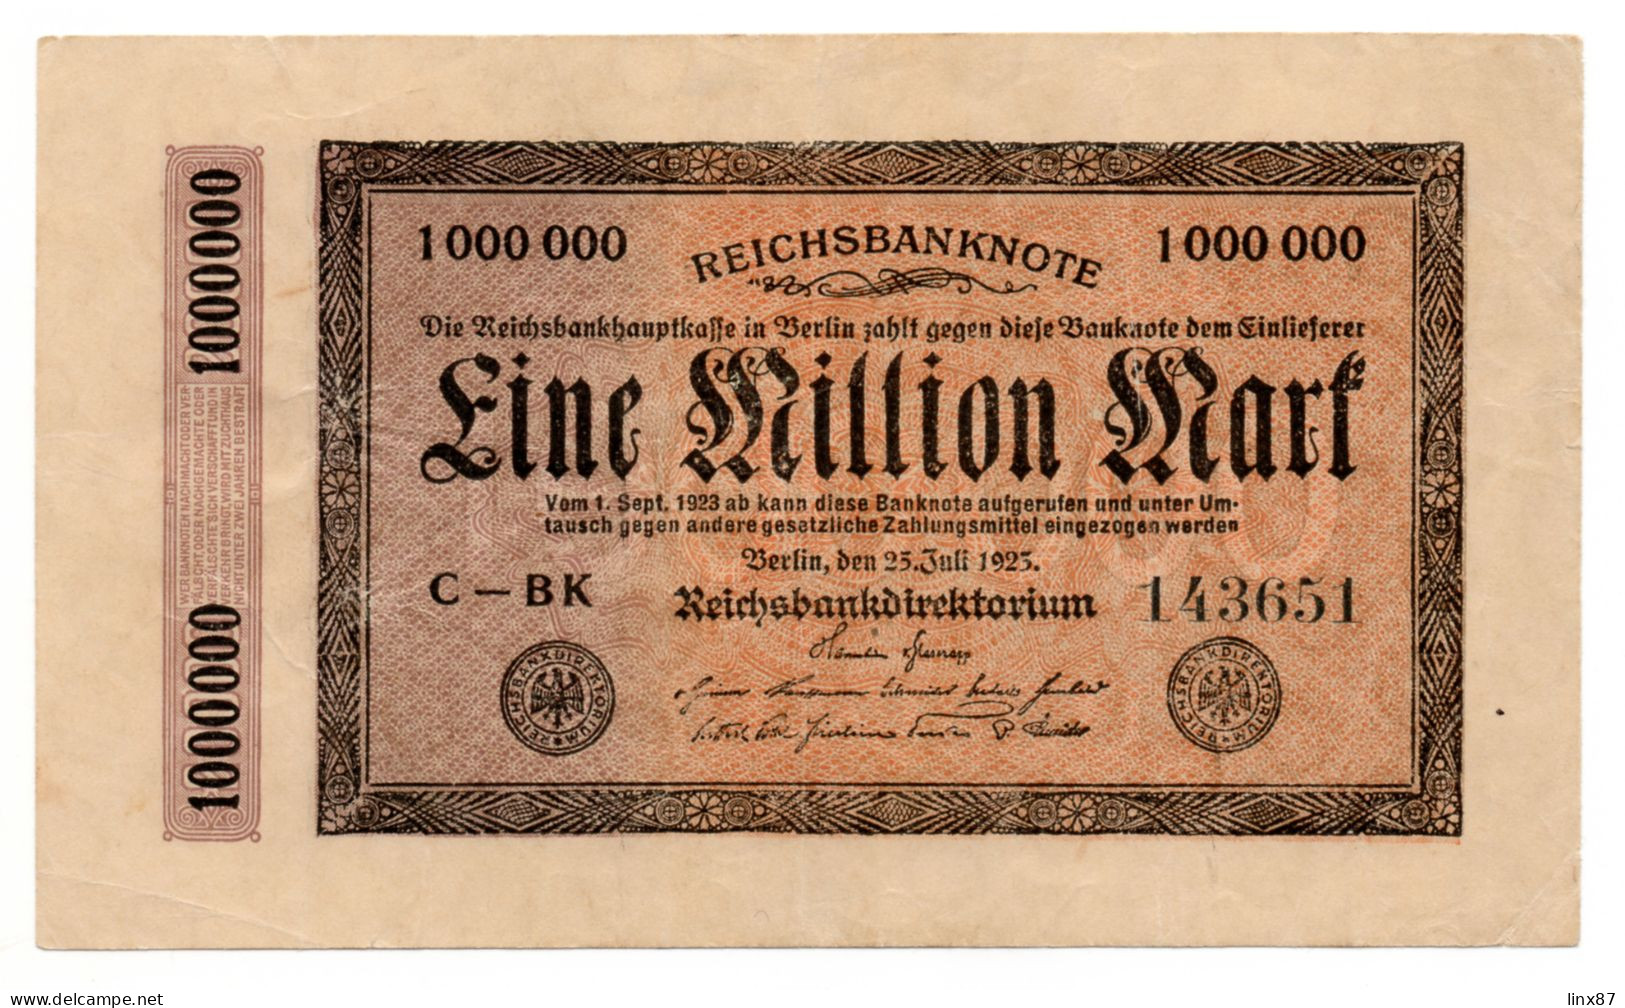 "Reichsbanknote" collezione di n. 47 banconote germania 1910-1923.